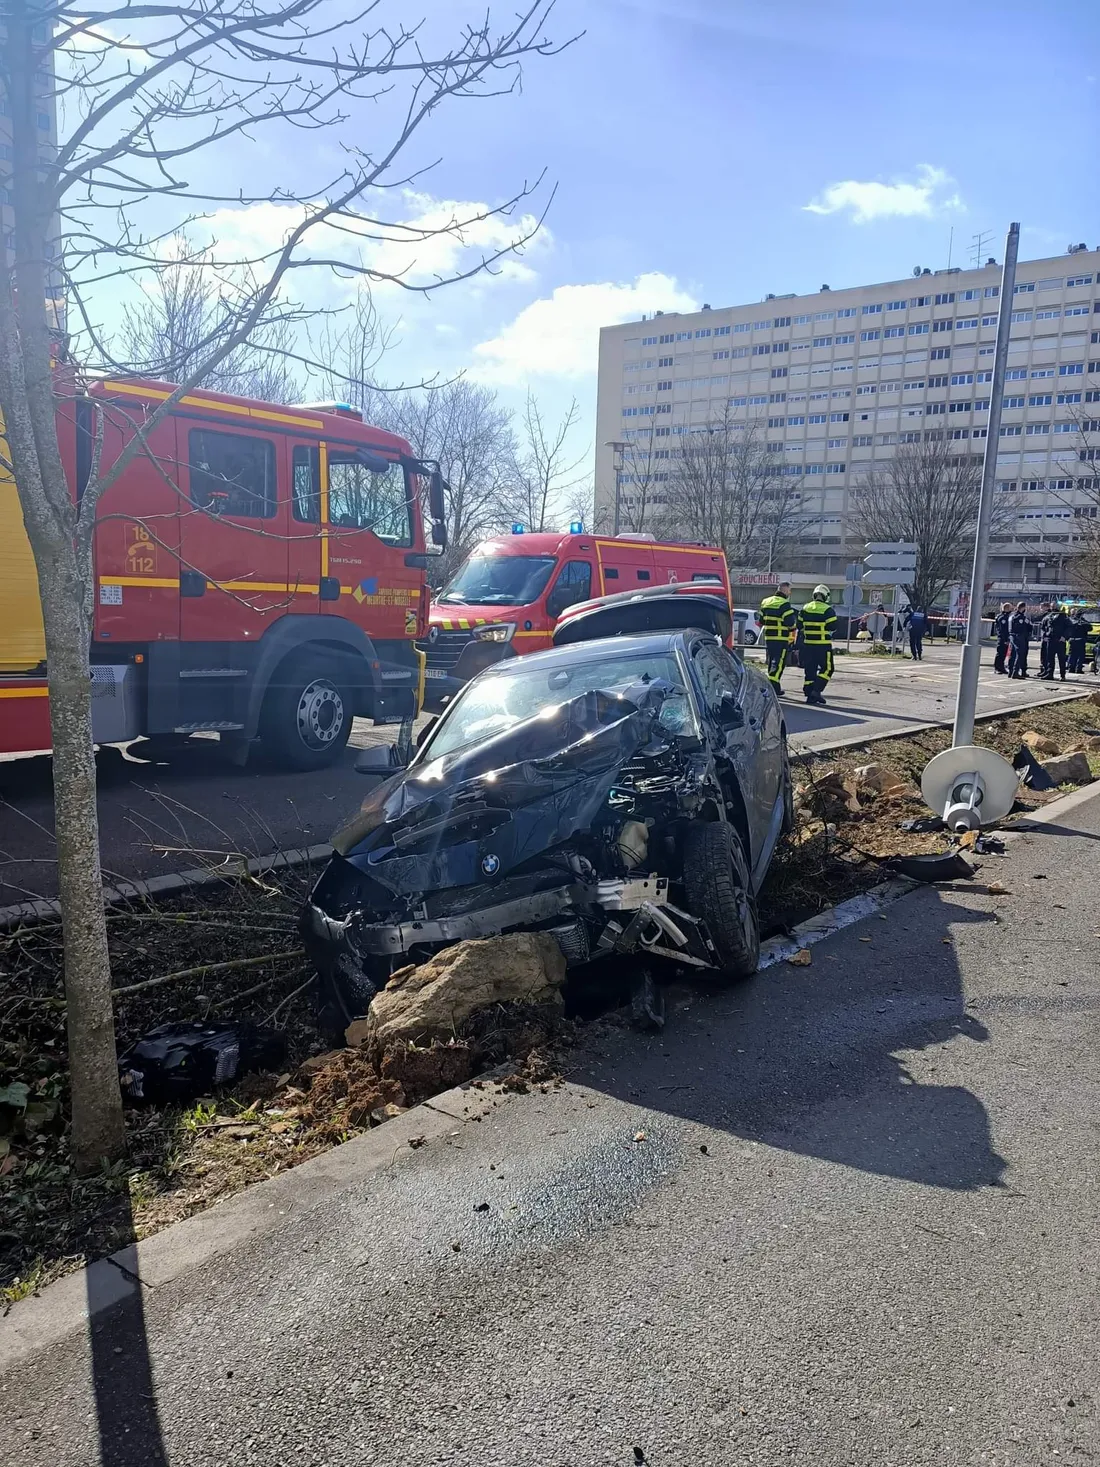 Accident spectaculaire ce samedi 26 février à Nancy